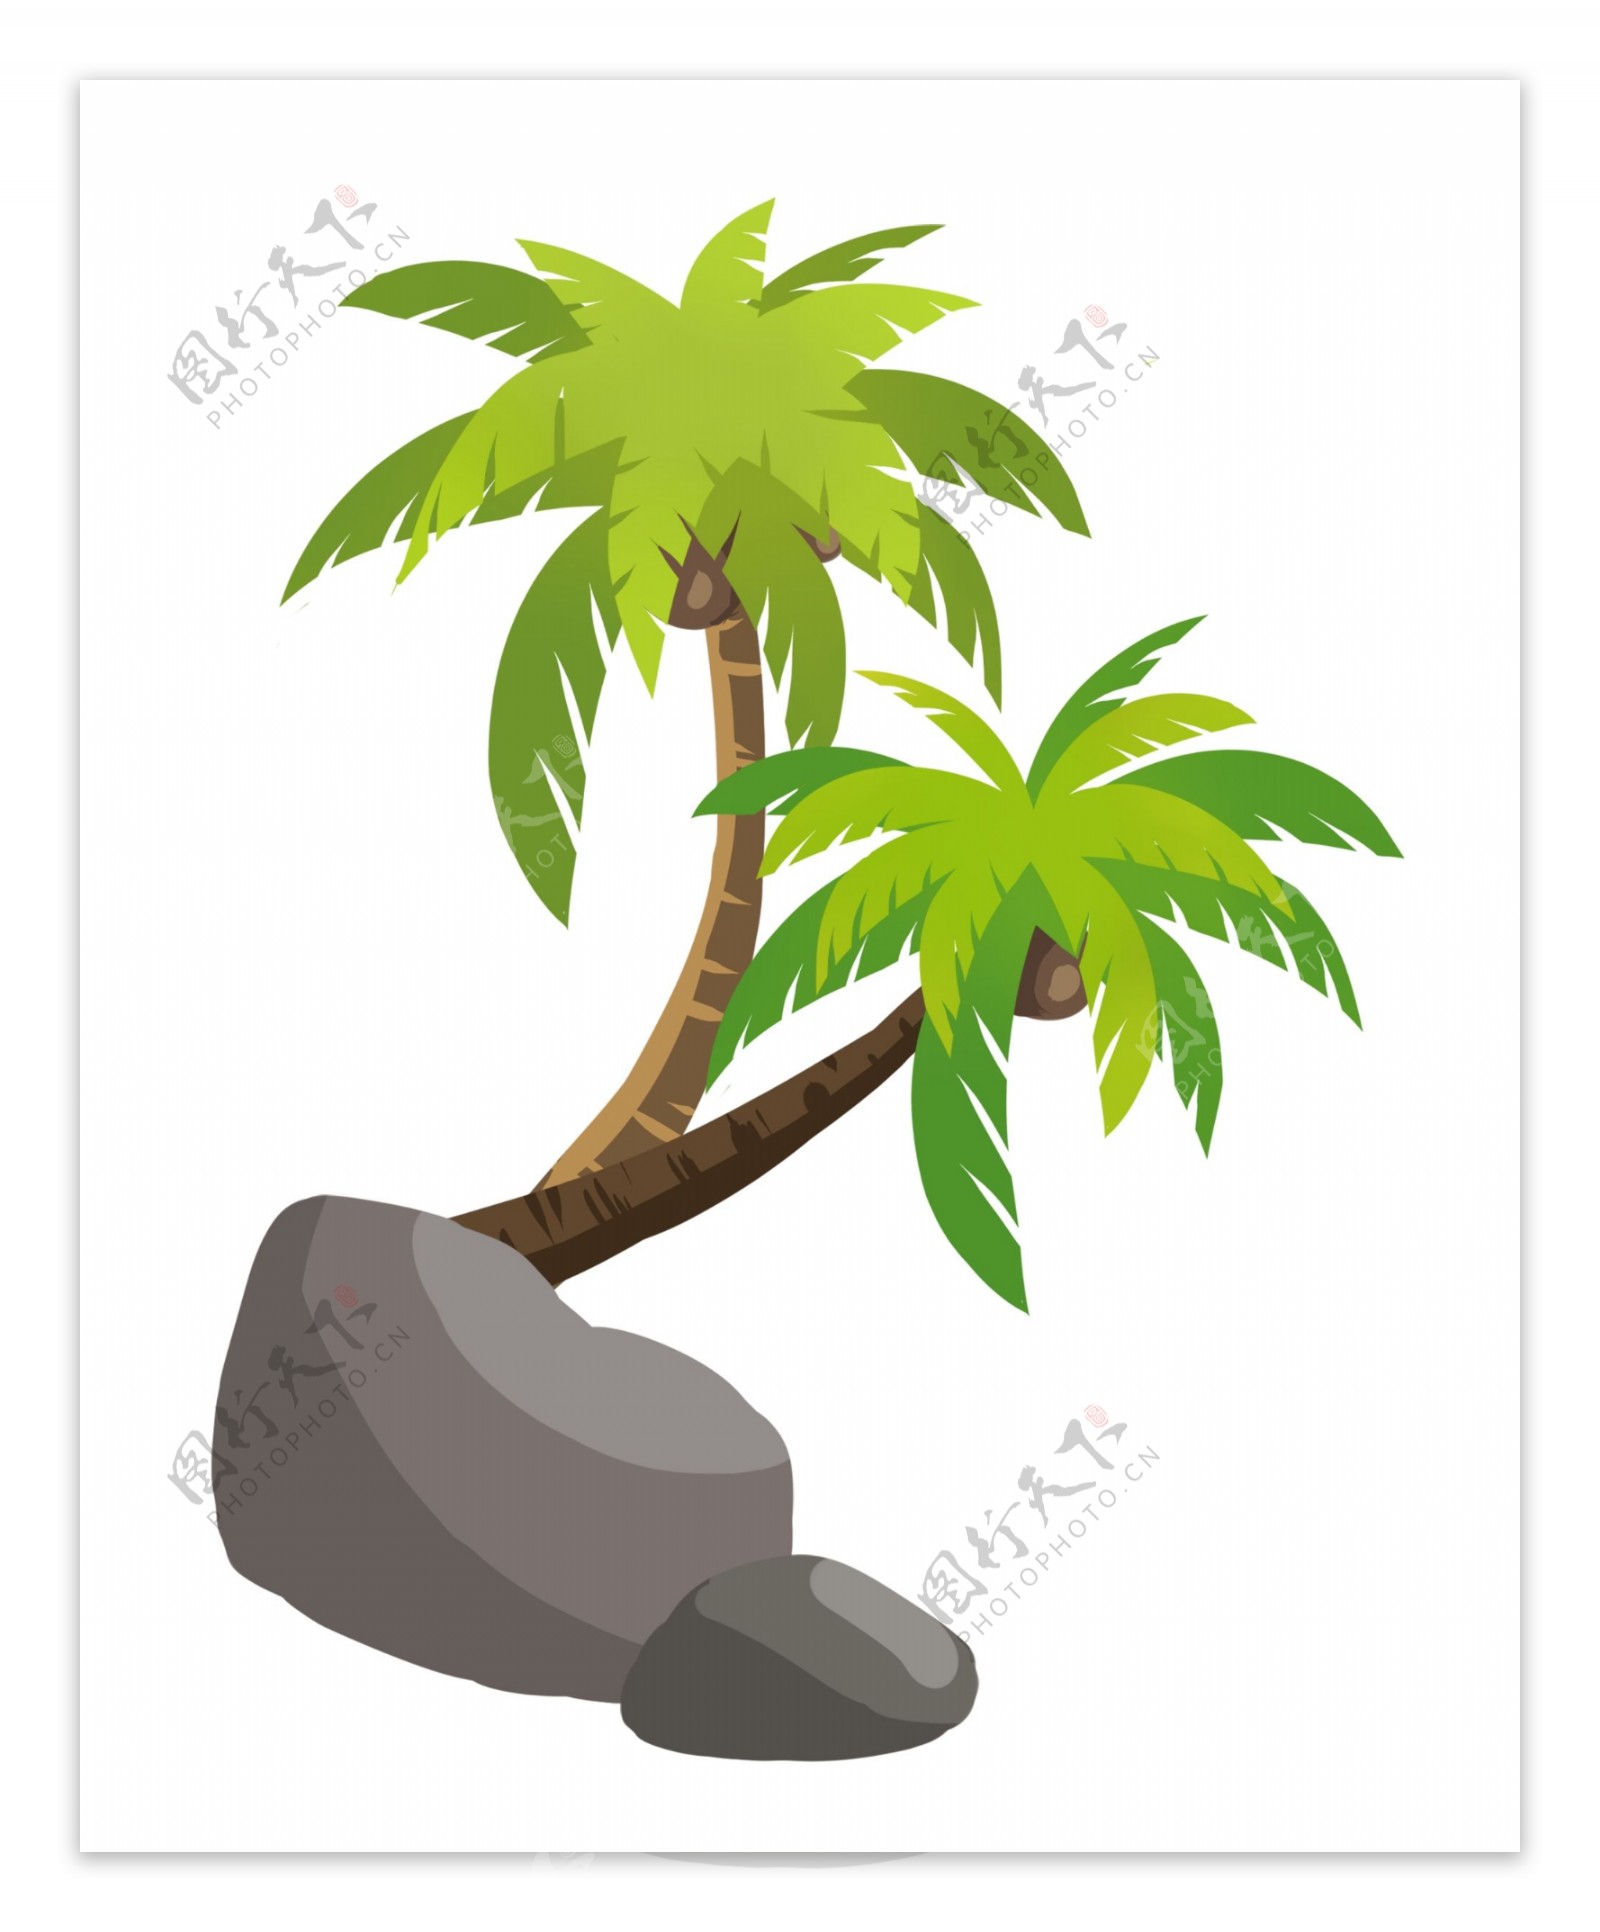 夏季热带元素绿色椰子树免抠png